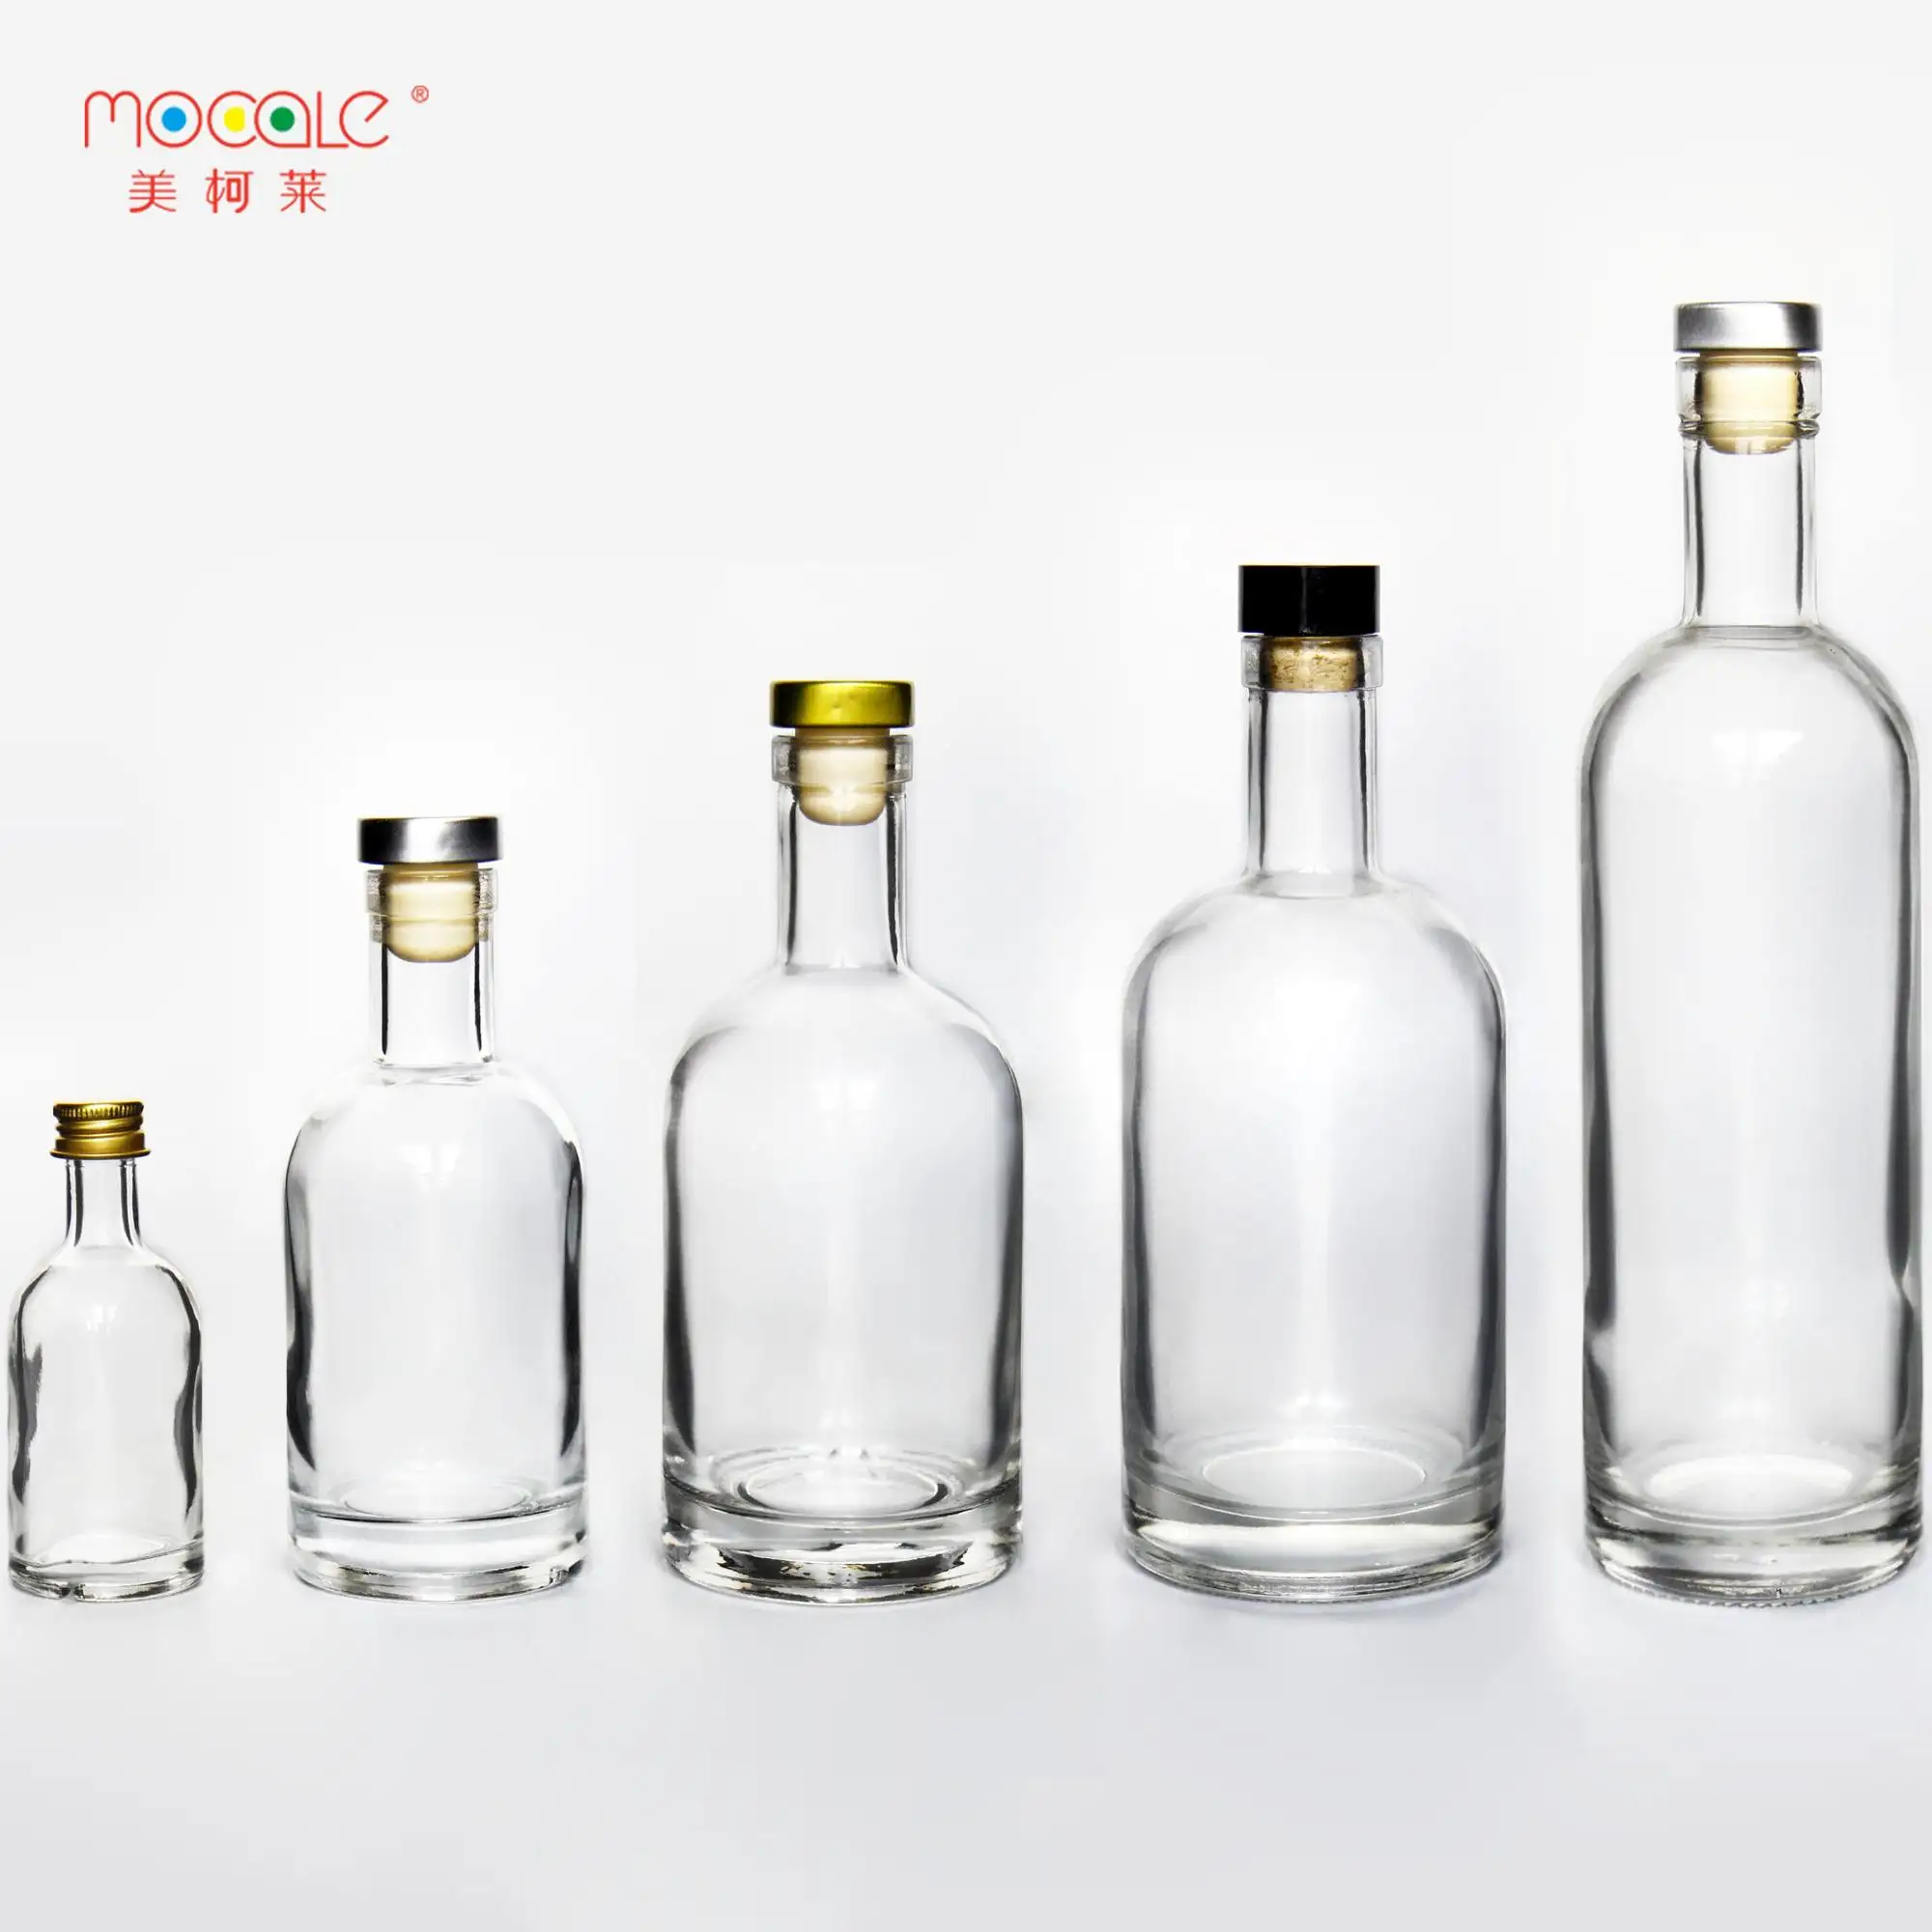 Classic Xo Alcohol Drinken 8 Oz 16 Oz Ronde Rum Fles Miniatuur 750 Ml Glas Drank Fles Met Kurk Top voor Geesten